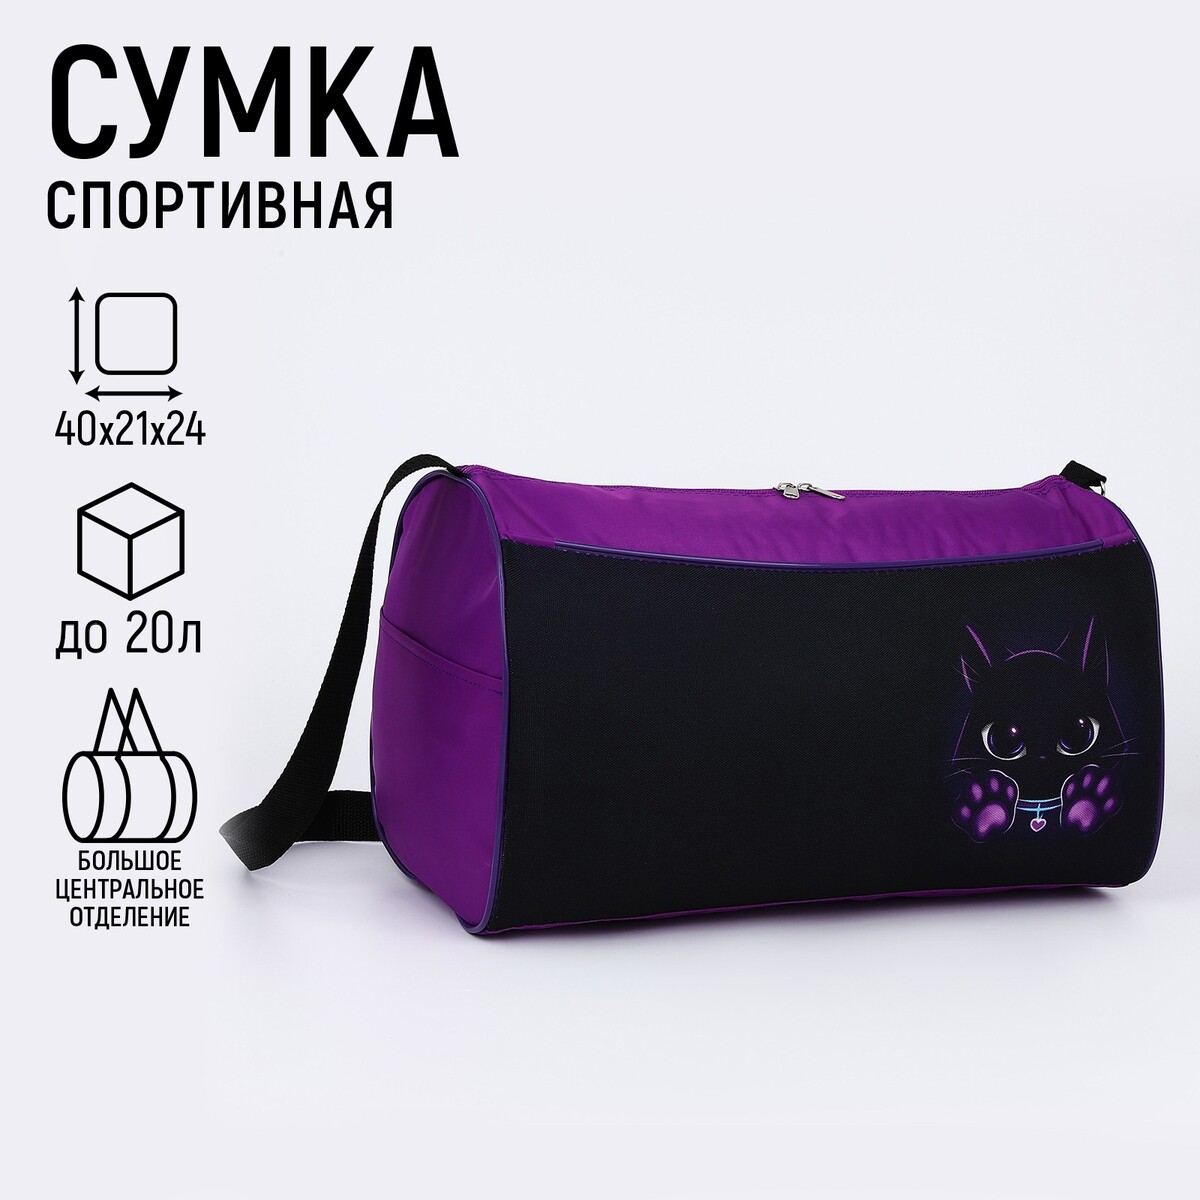 Сумка спортивная котик, 40х21х24см, цвет черный, фиолетовый сумка для йоги sangh 48×25×18 см фиолетовый